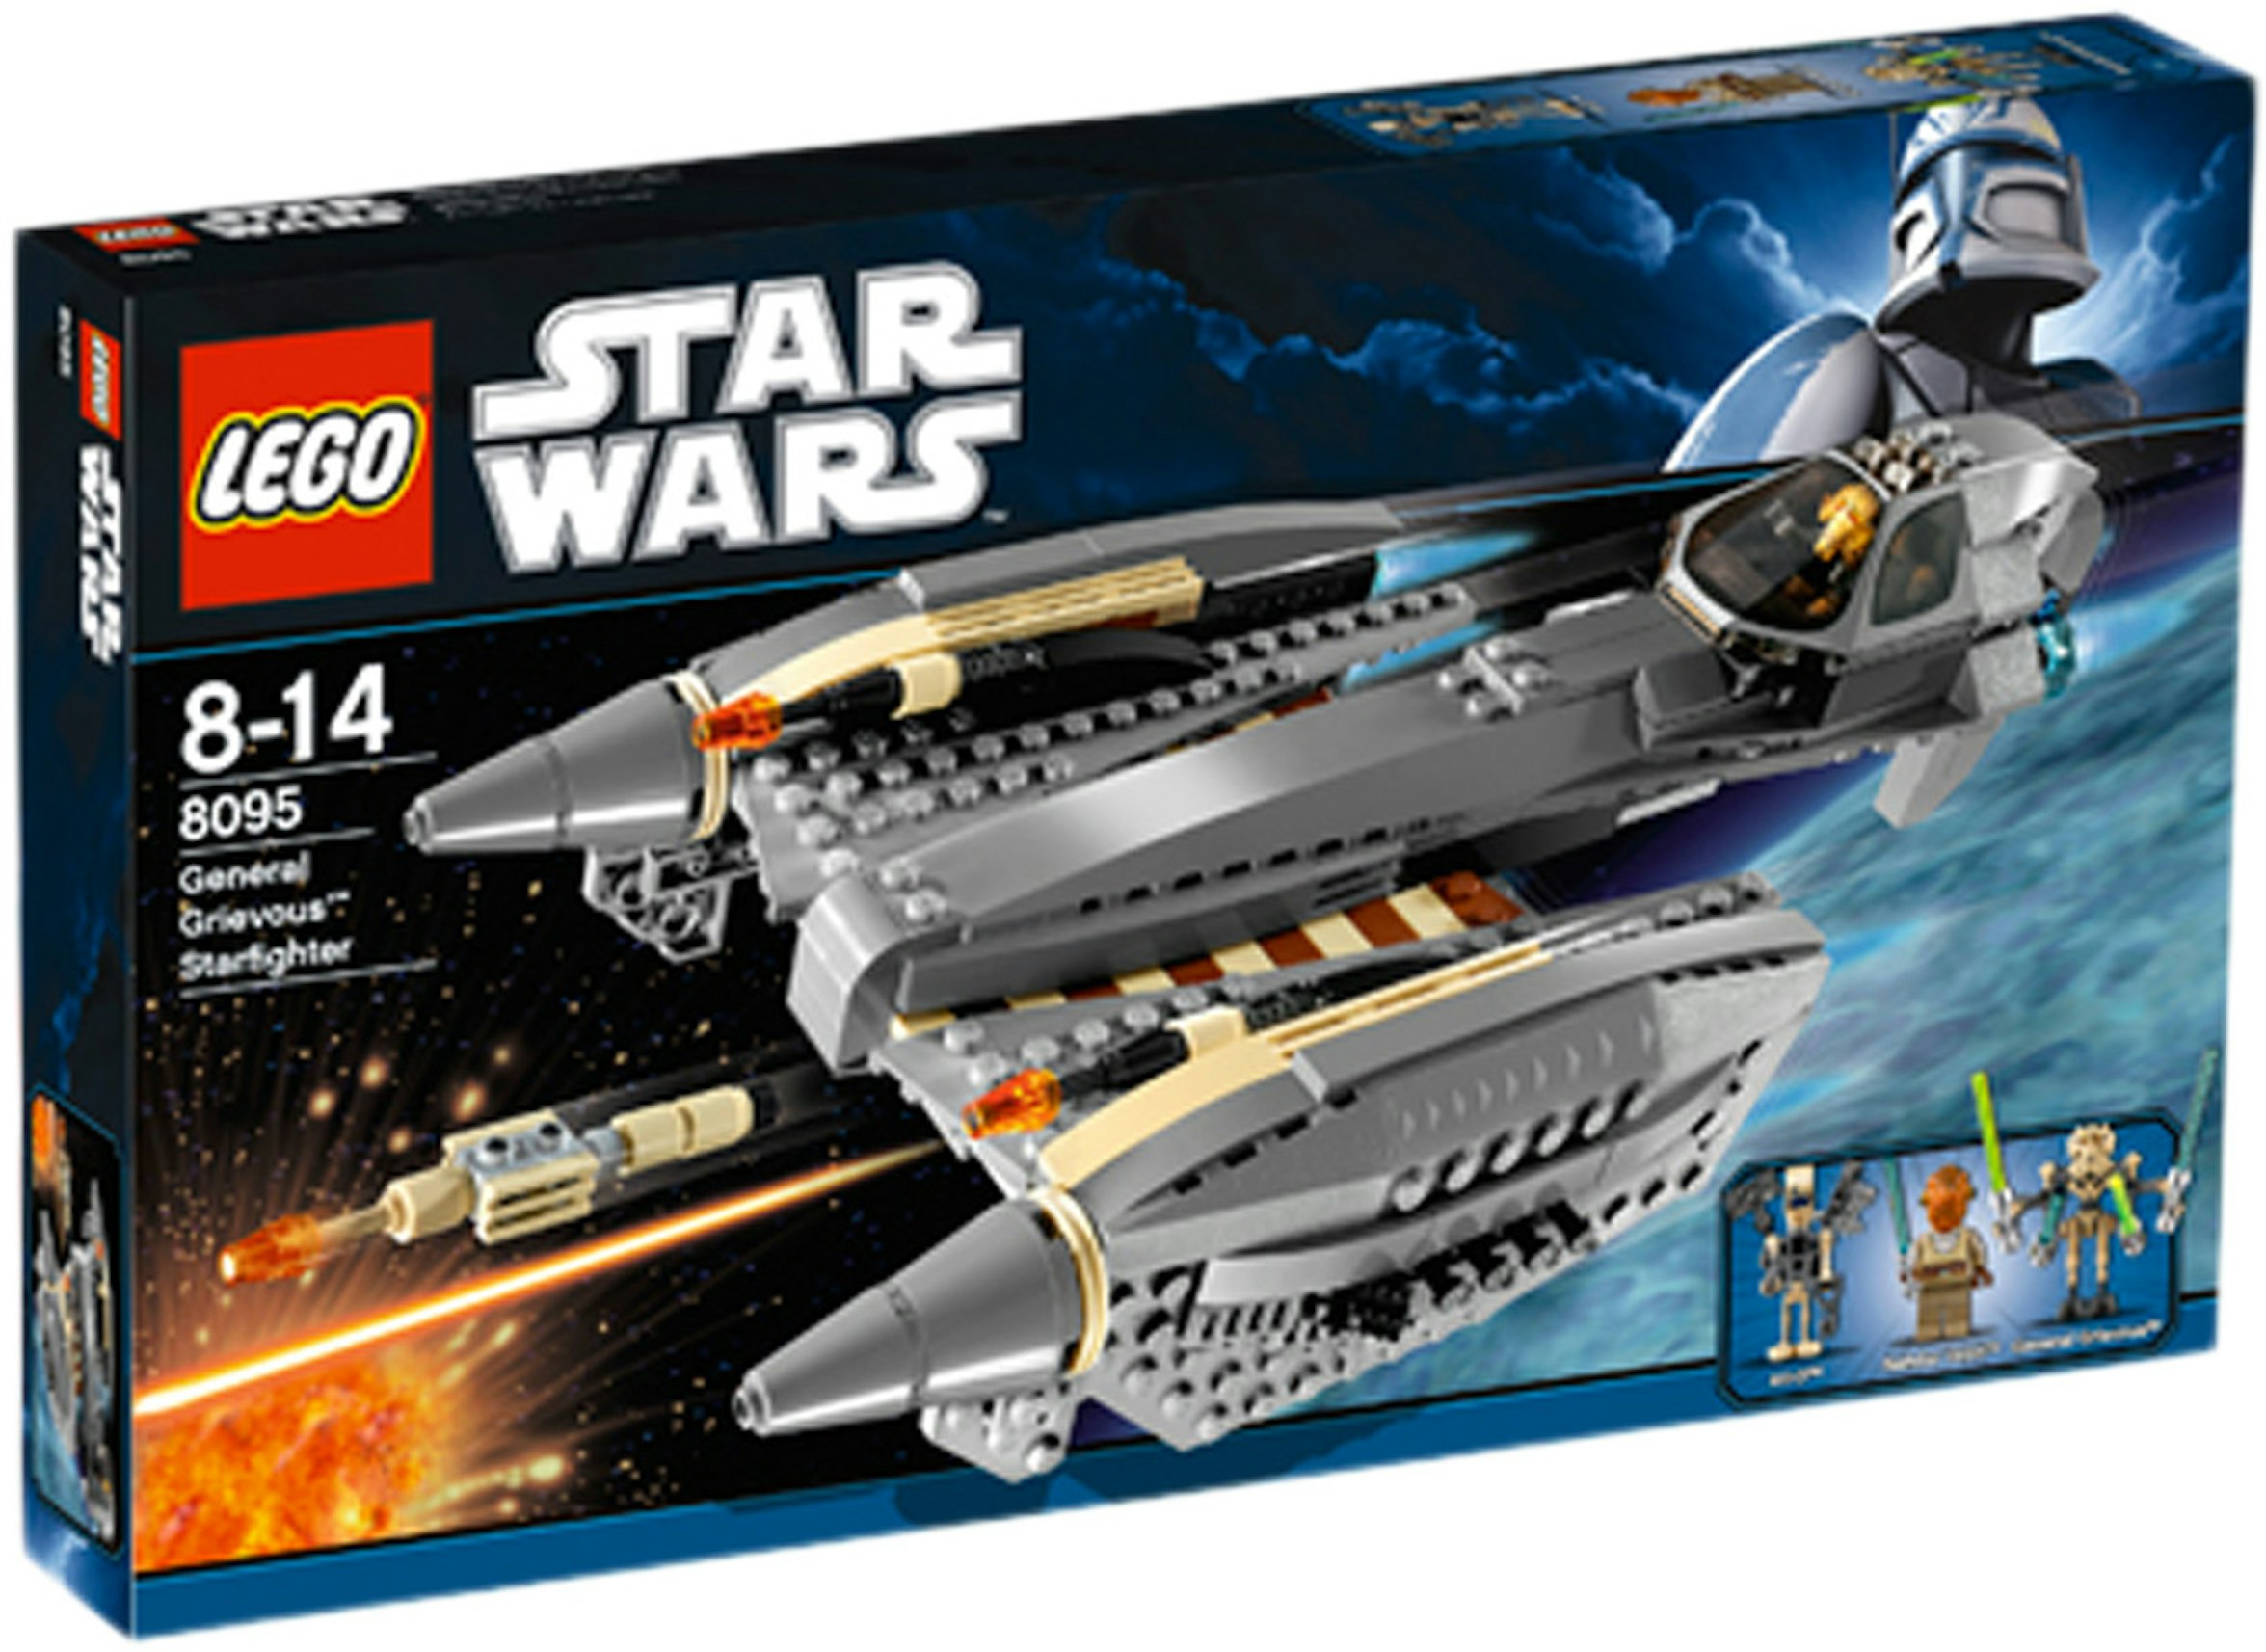 Nævne Centimeter Triumferende LEGO Star Wars General Grievous' Starfighter Set 8095 - US